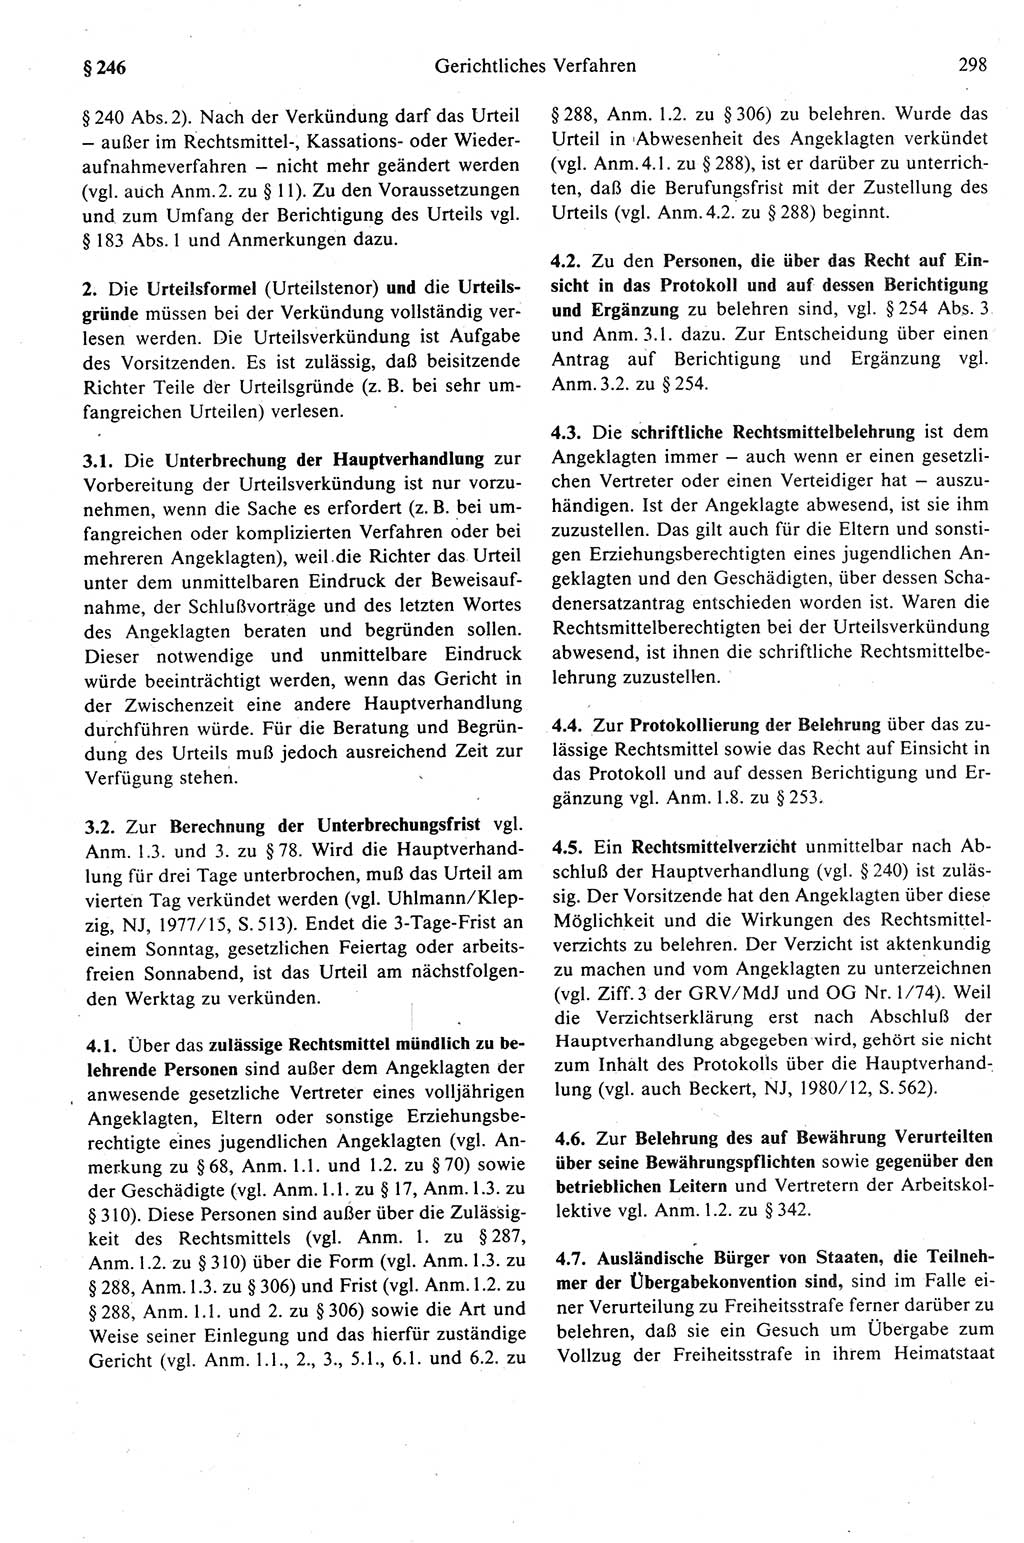 Strafprozeßrecht der DDR (Deutsche Demokratische Republik), Kommentar zur Strafprozeßordnung (StPO) 1989, Seite 298 (Strafprozeßr. DDR Komm. StPO 1989, S. 298)